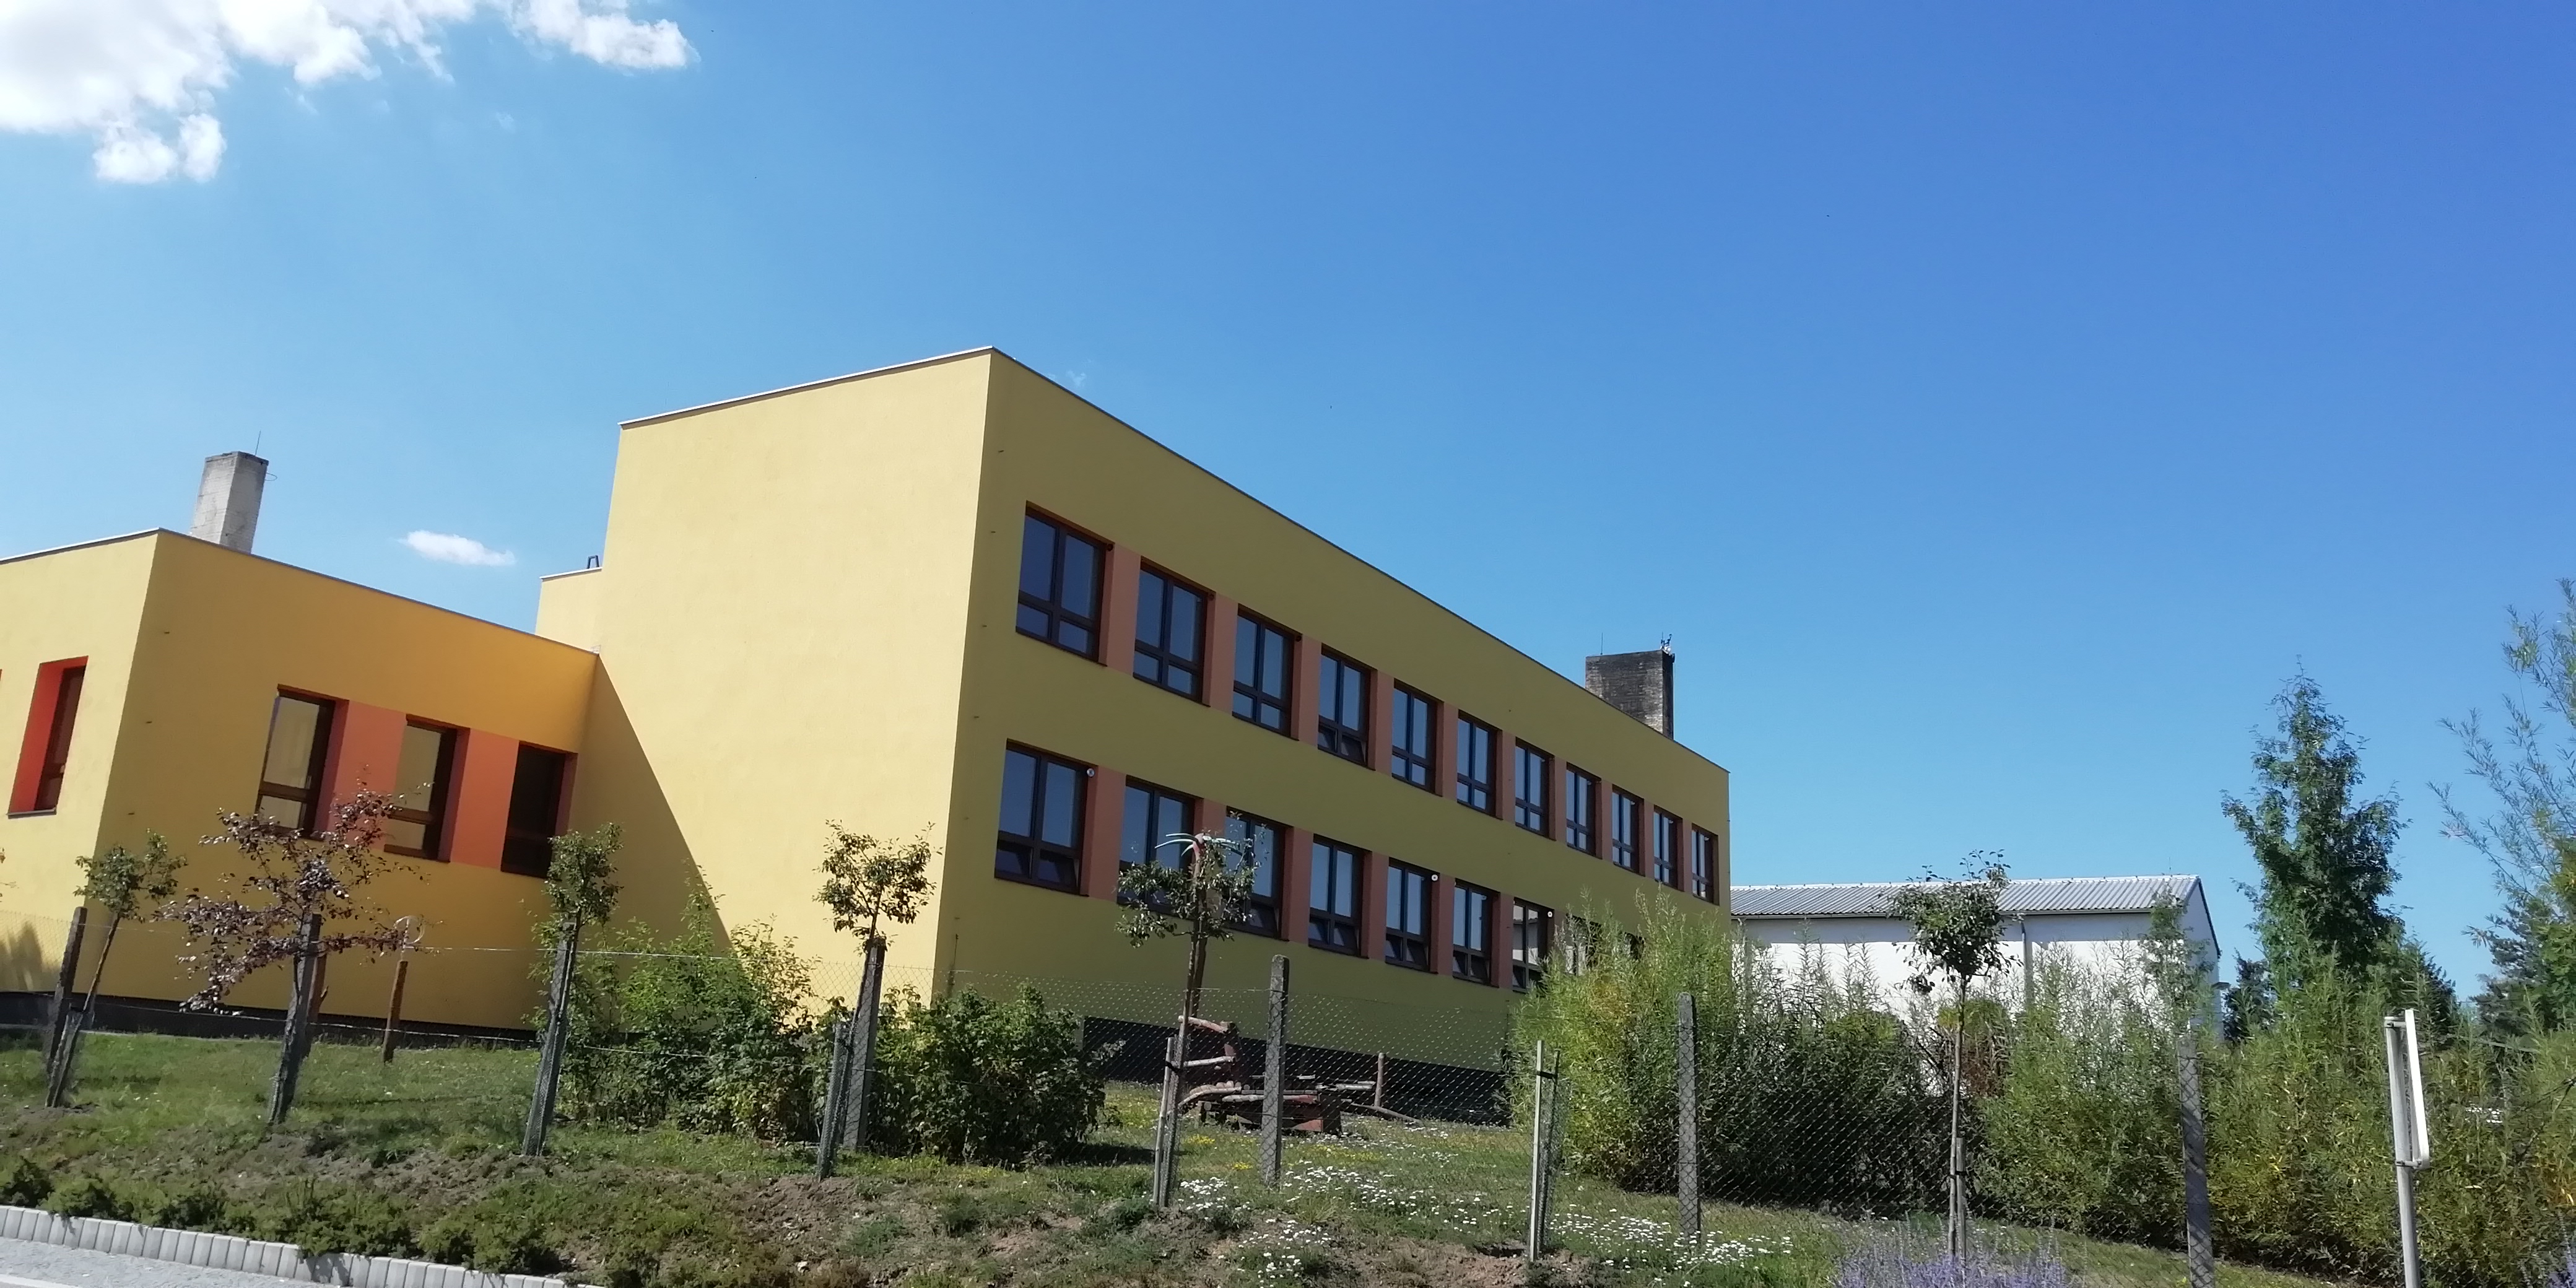 Snížení energetické náročnosti objektu základní školy v Albrechticích nad Vltavou